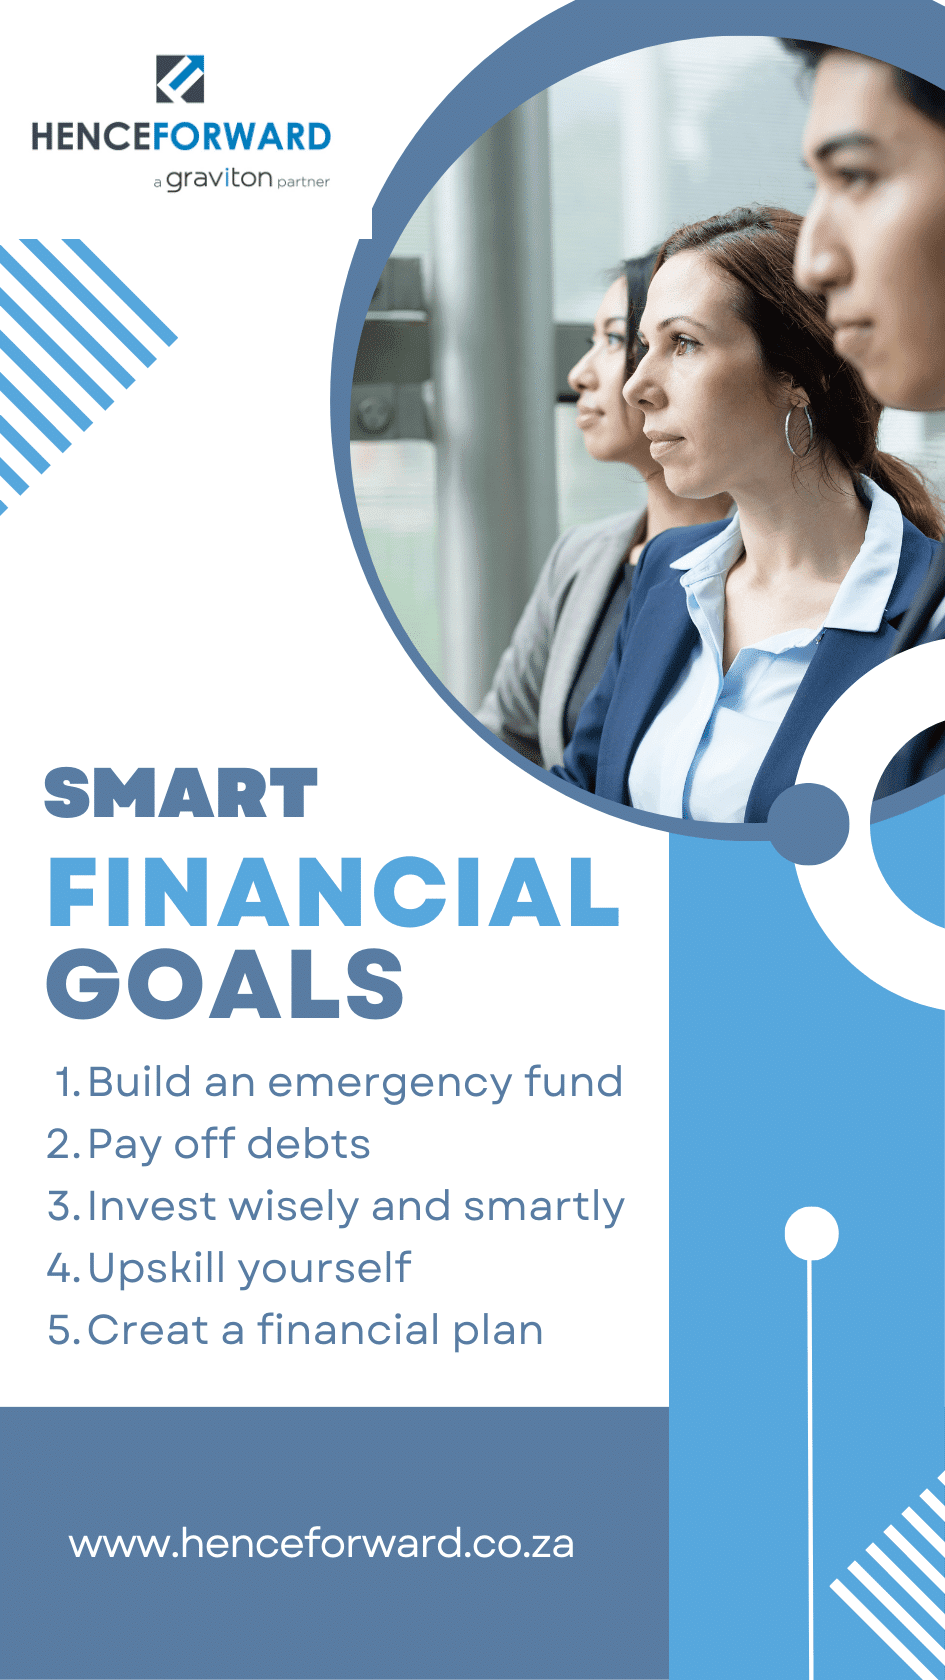 setting financial goals, wealth goals